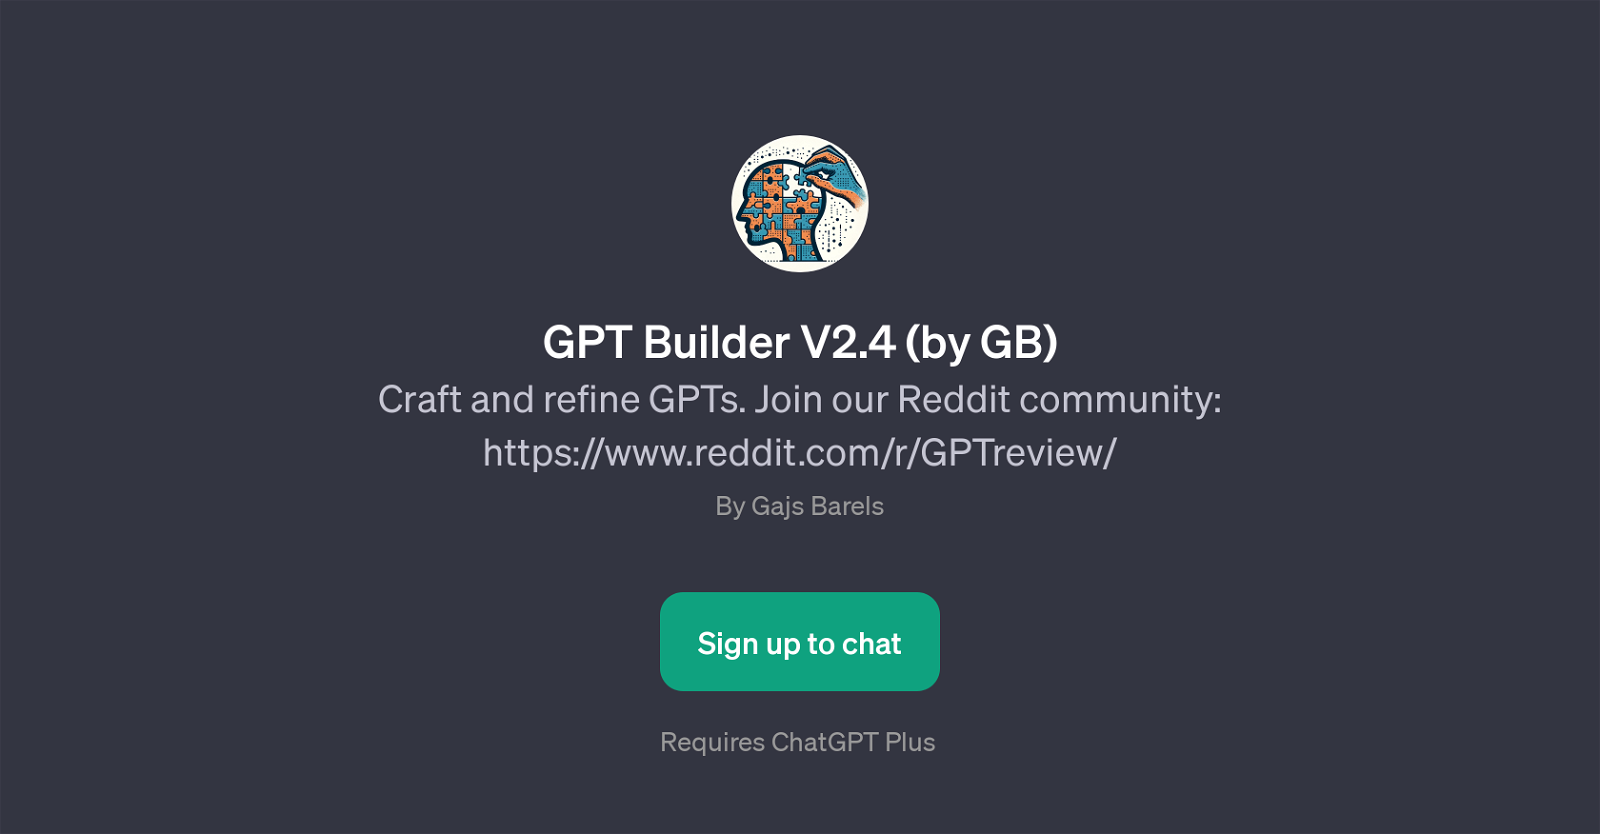 GPT Builder V2.4 website